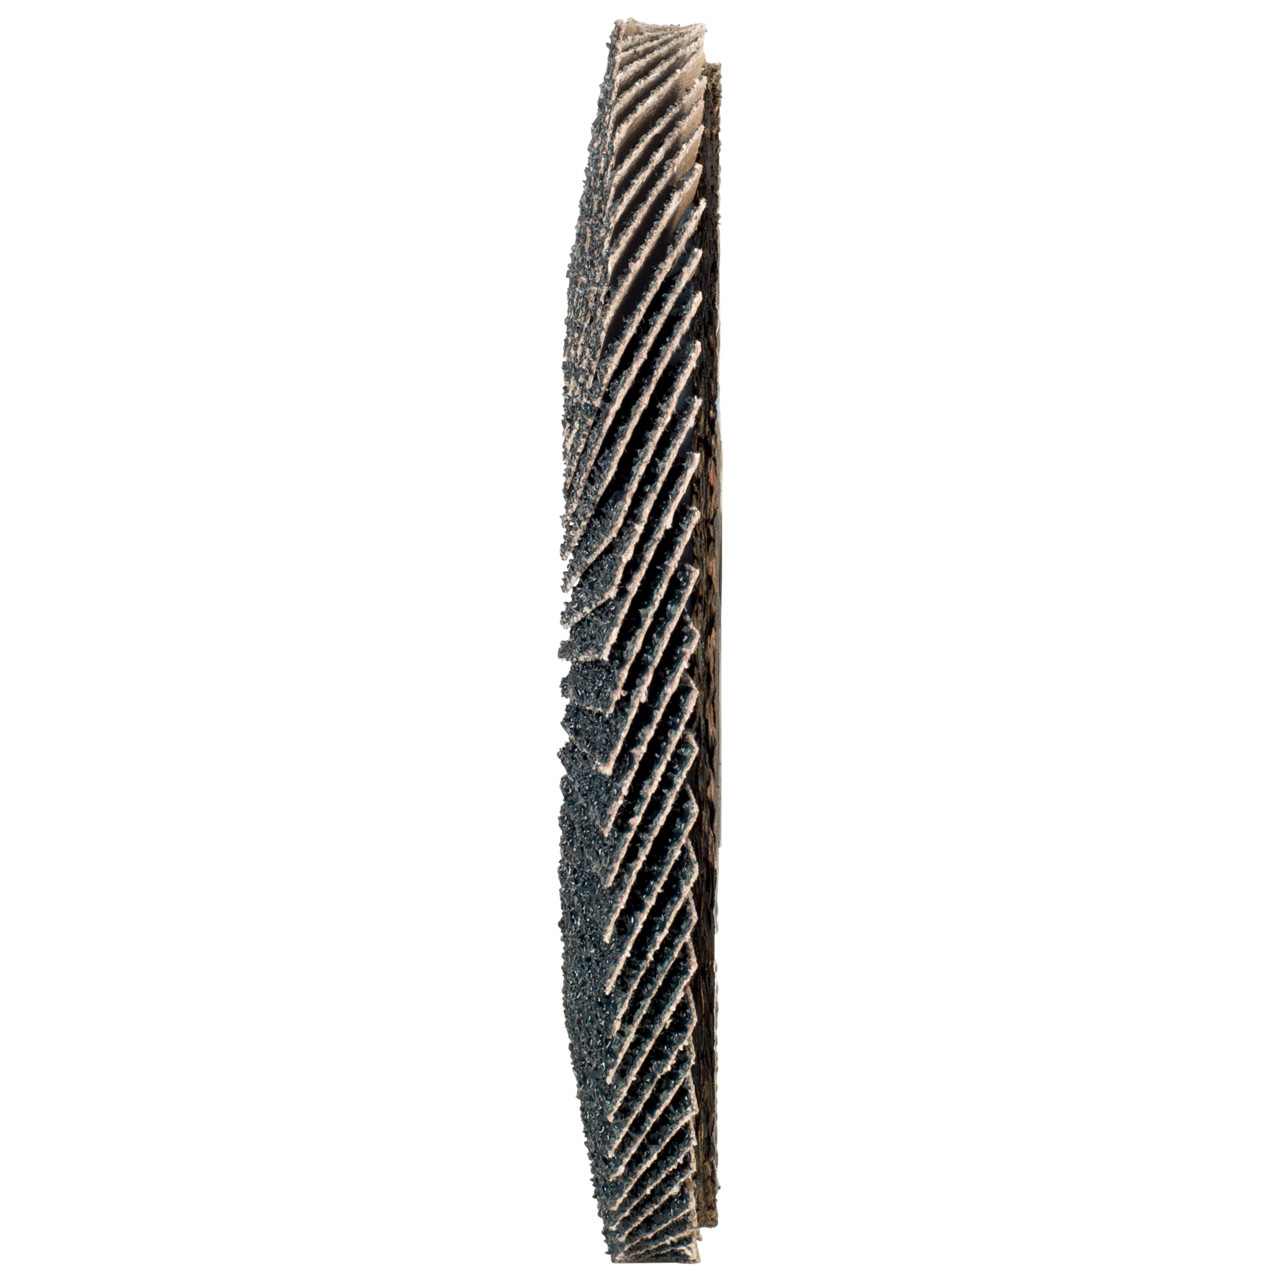 Tyrolit Arandela dentada DxH 125x22,2 2en1 para acero y acero inoxidable, P80, forma: 28A - versión recta (versión con cuerpo de soporte de fibra de vidrio), Art. 668694